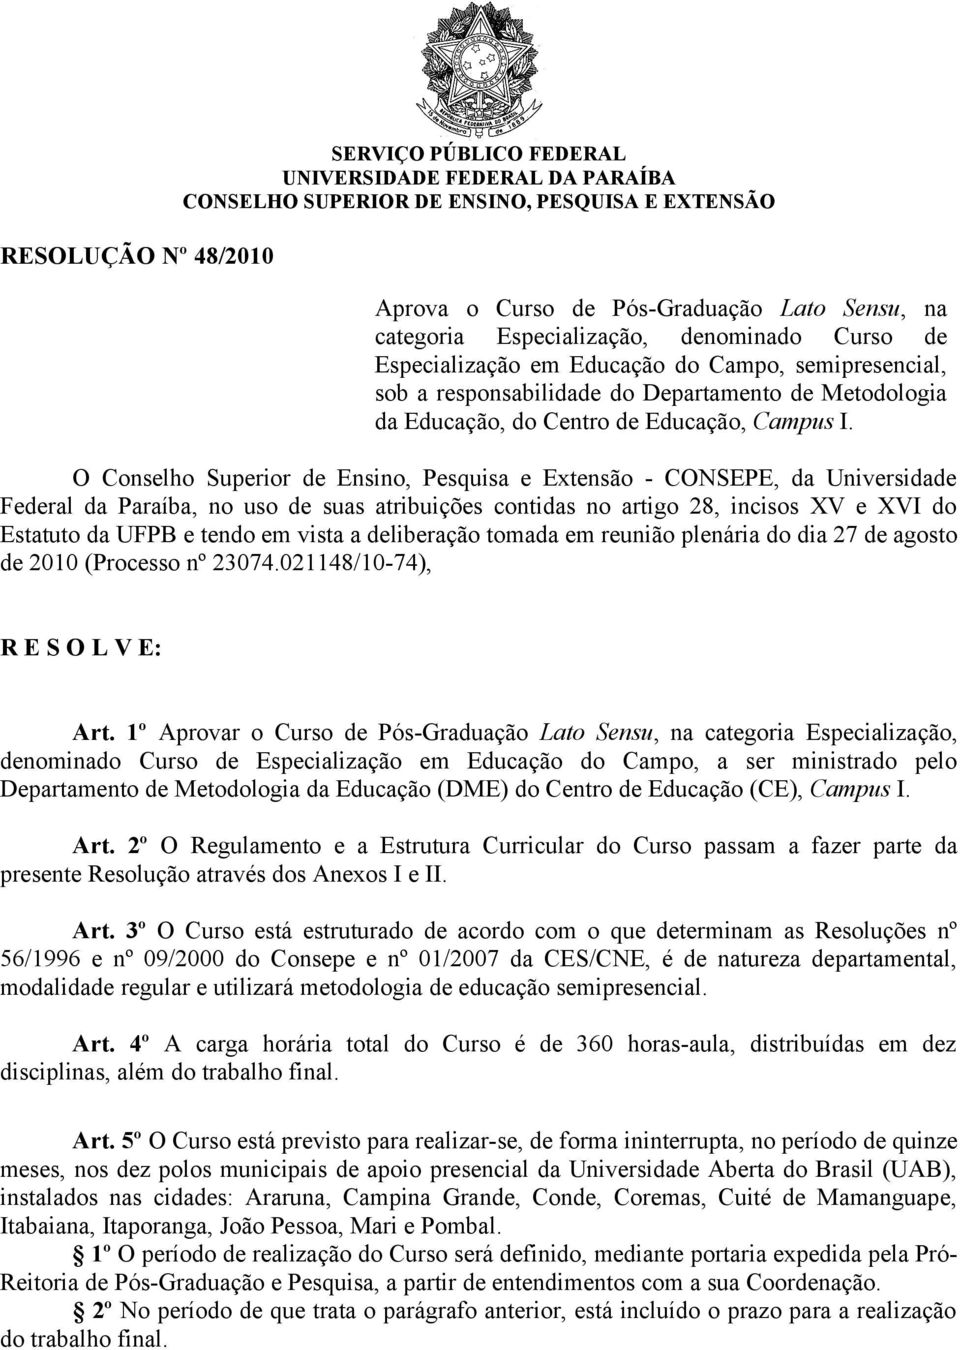 O Conselho Superior de Ensino, Pesquisa e Extensão - CONSEPE, da Universidade Federal da Paraíba, no uso de suas atribuições contidas no artigo 28, incisos XV e XVI do Estatuto da UFPB e tendo em